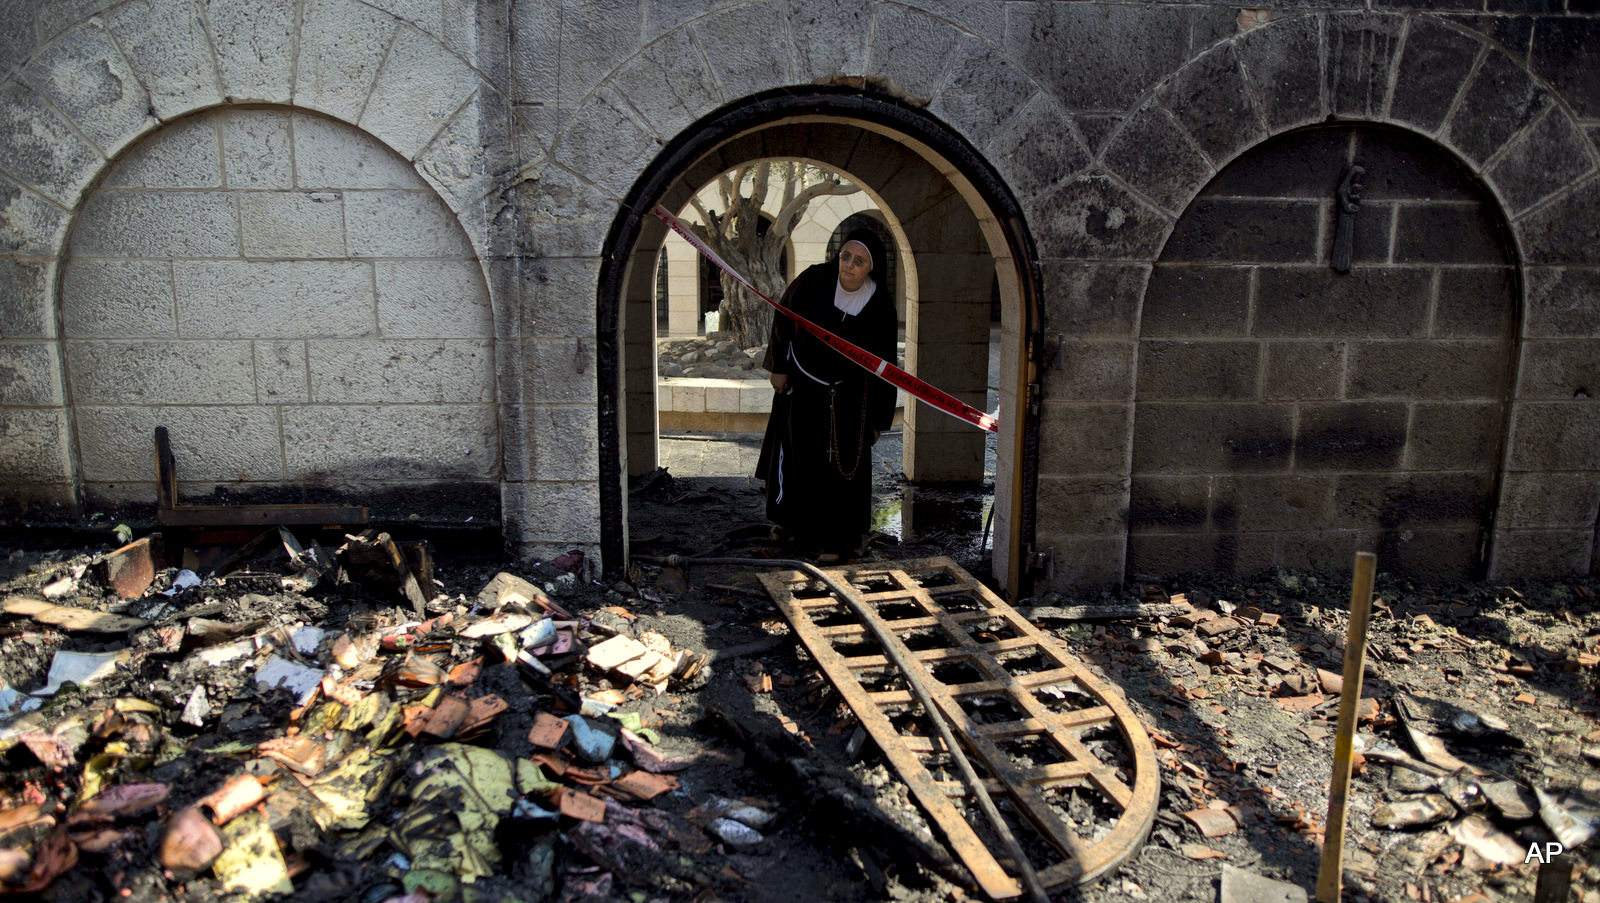 قراءة في داوفع الحقد الصهيوني الأعمى تجاه مسيحيي فلسطين